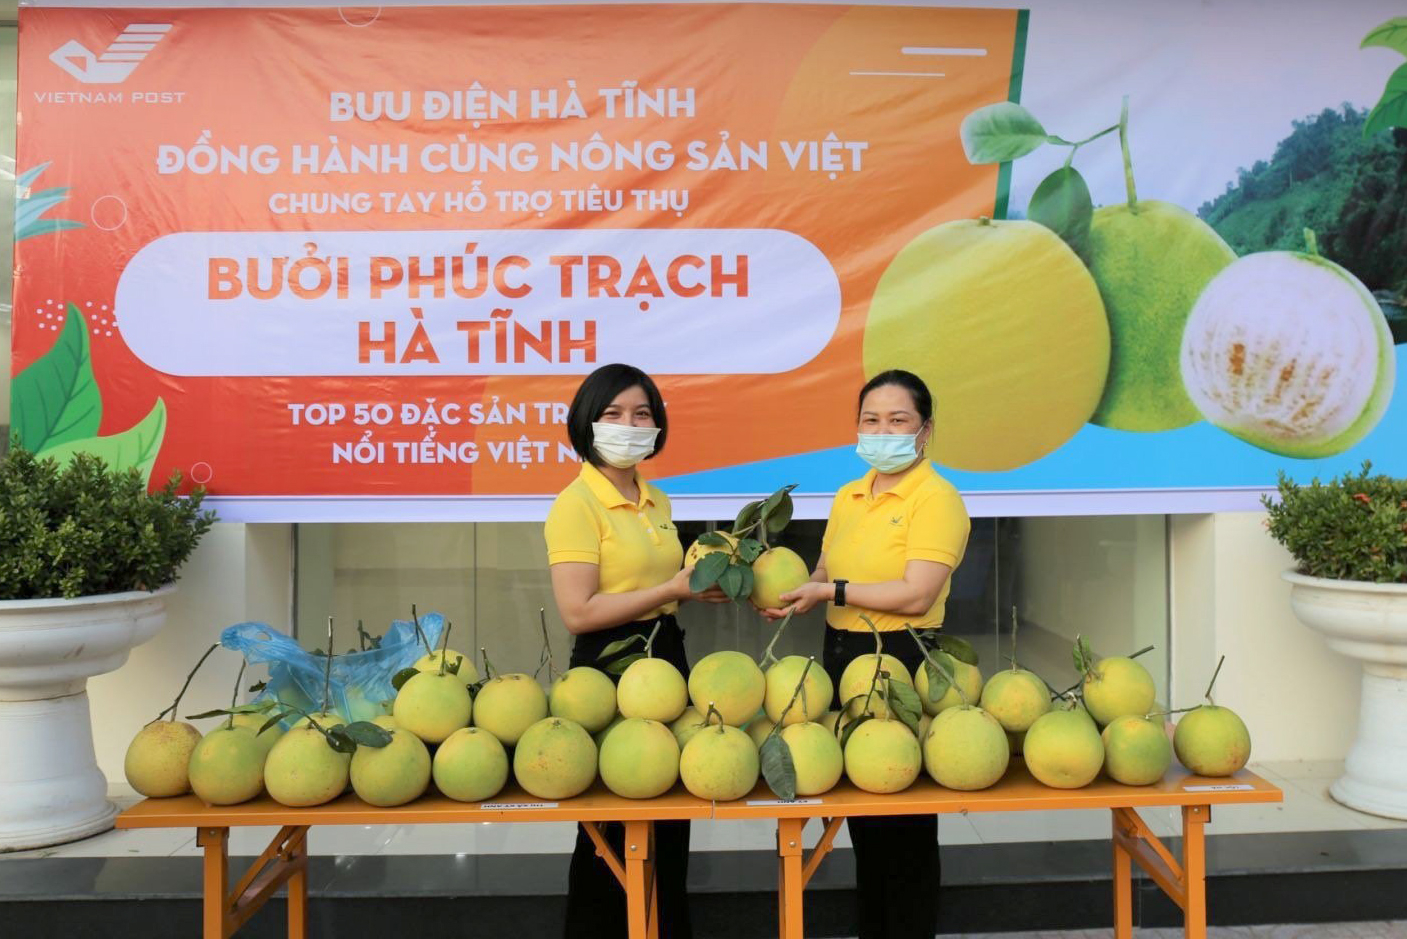 Bưu điện Việt Nam dự kiến hỗ trợ tiêu thụ được 500 tấn bưởi Phúc Trạch.